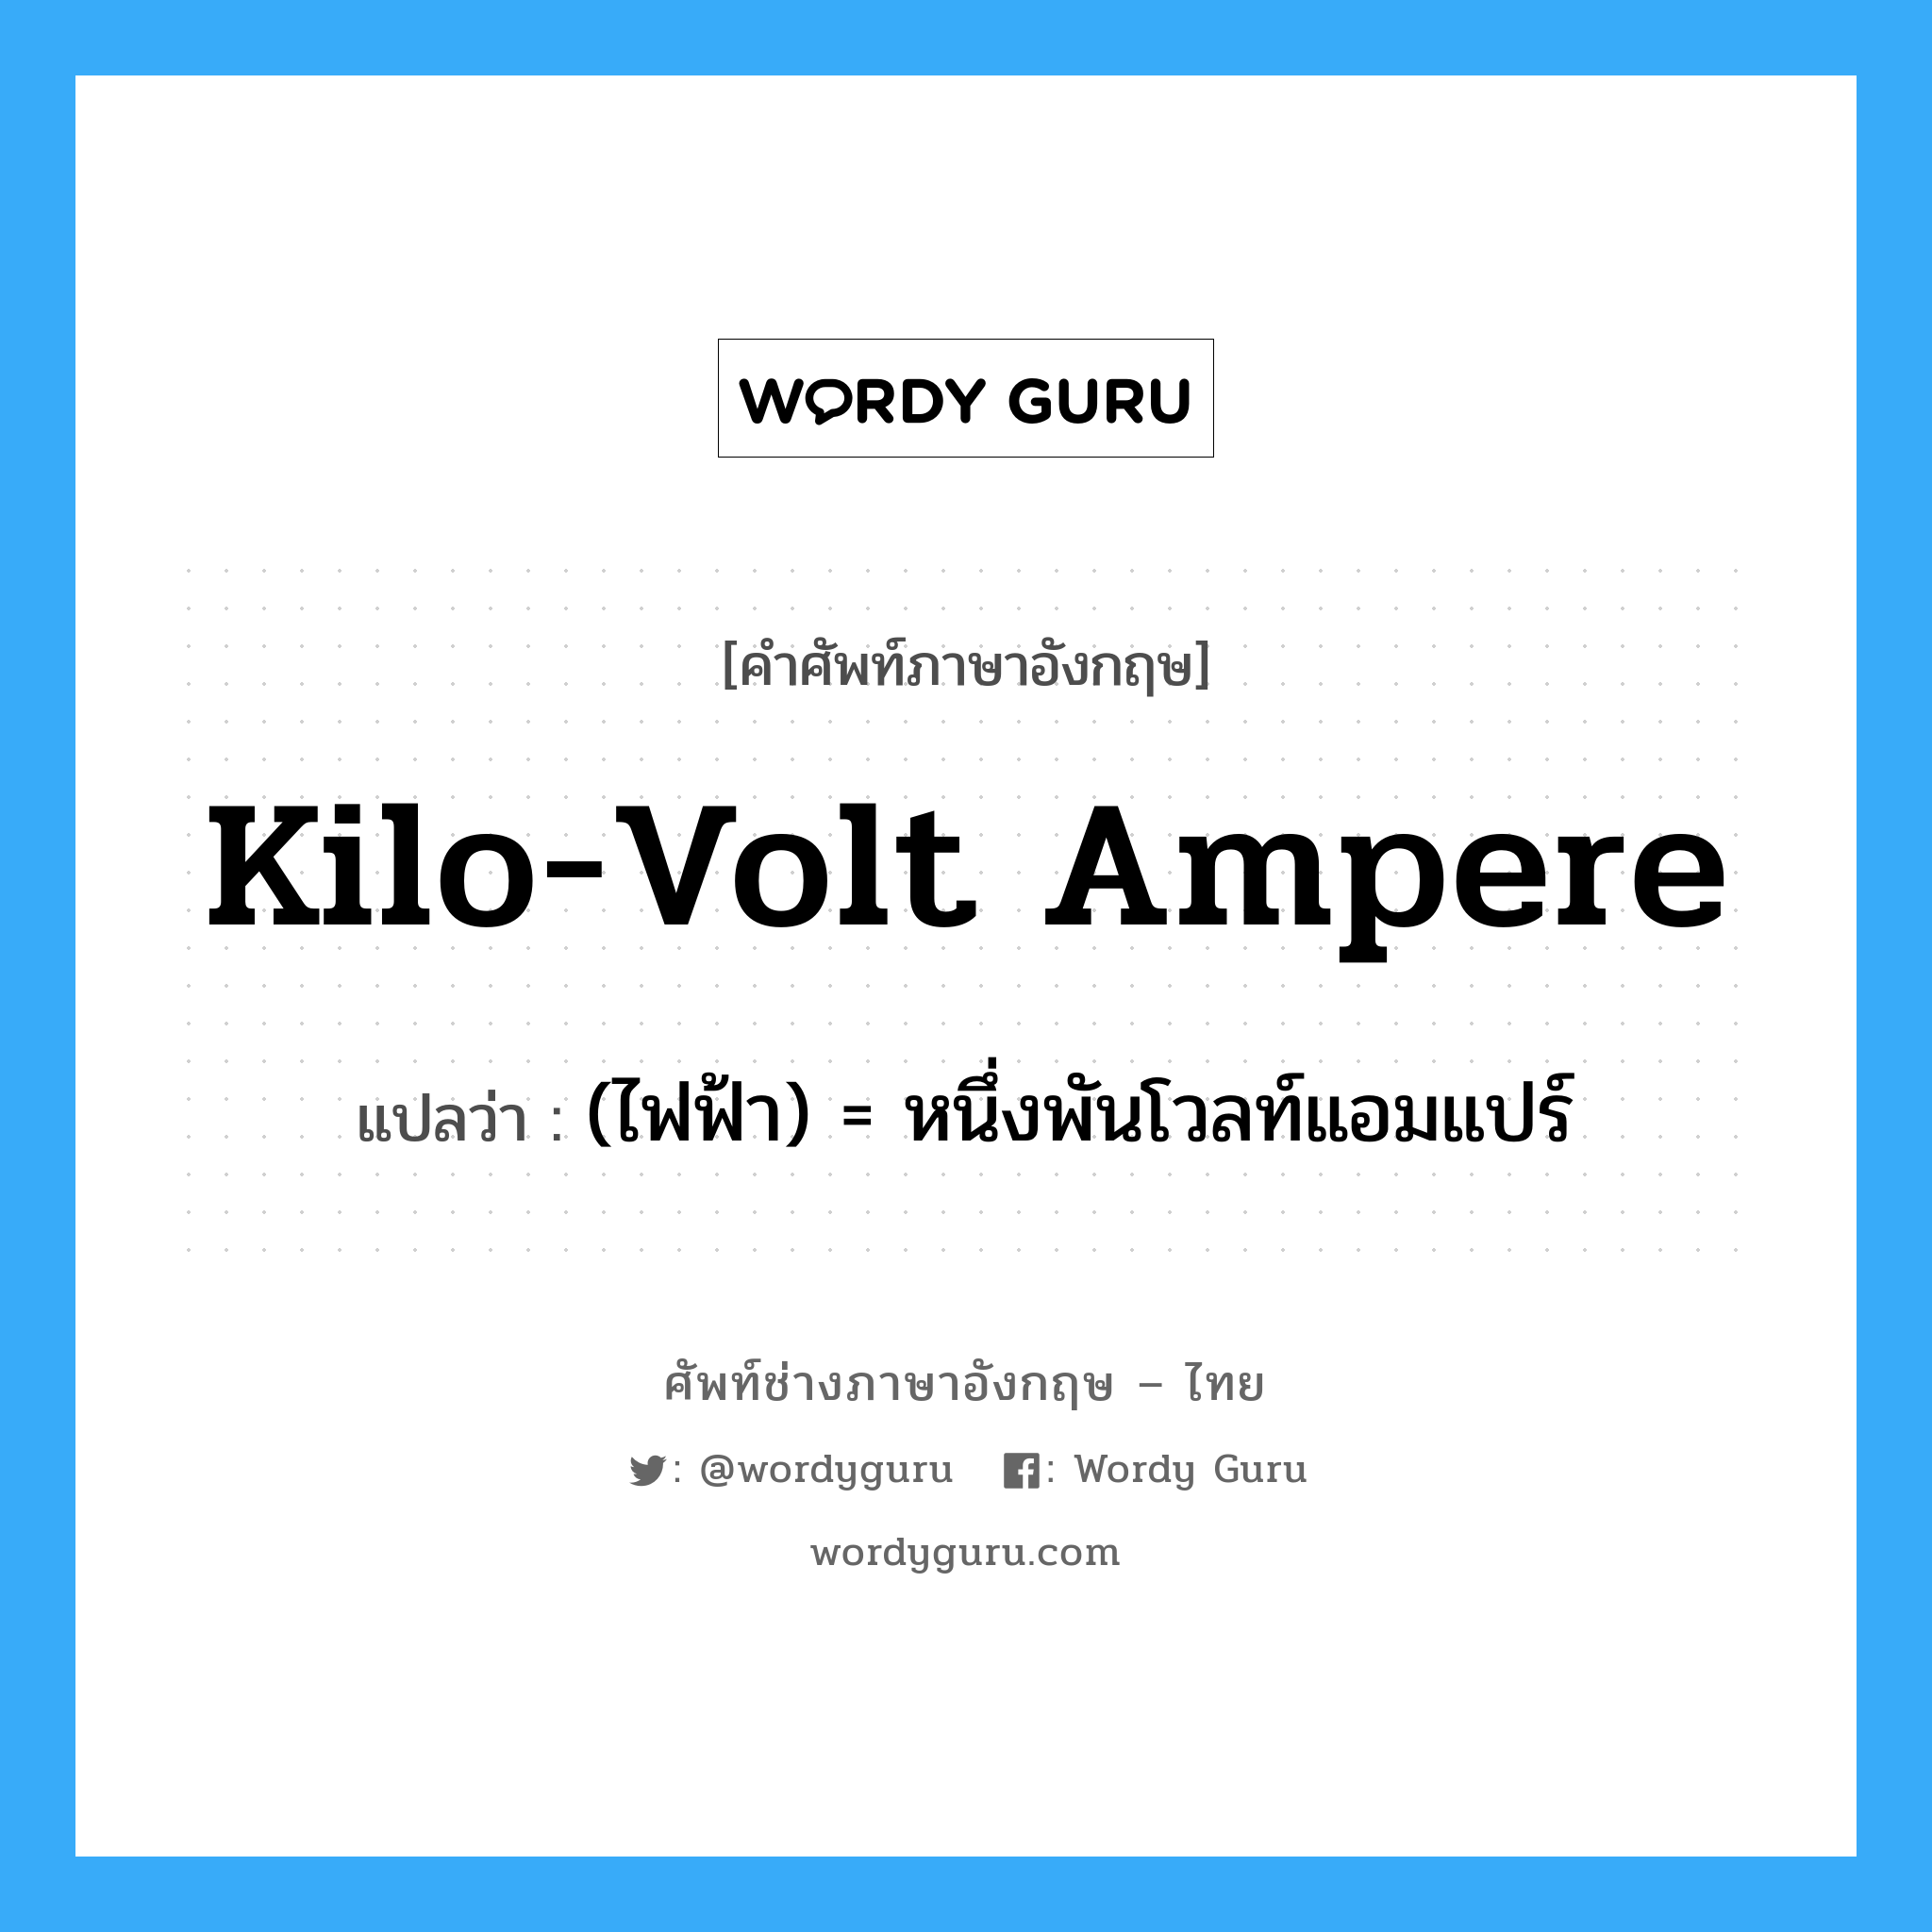 kilo-volt ampere แปลว่า?, คำศัพท์ช่างภาษาอังกฤษ - ไทย kilo-volt ampere คำศัพท์ภาษาอังกฤษ kilo-volt ampere แปลว่า (ไฟฟ้า) = หนึ่งพันโวลท์แอมแปร์